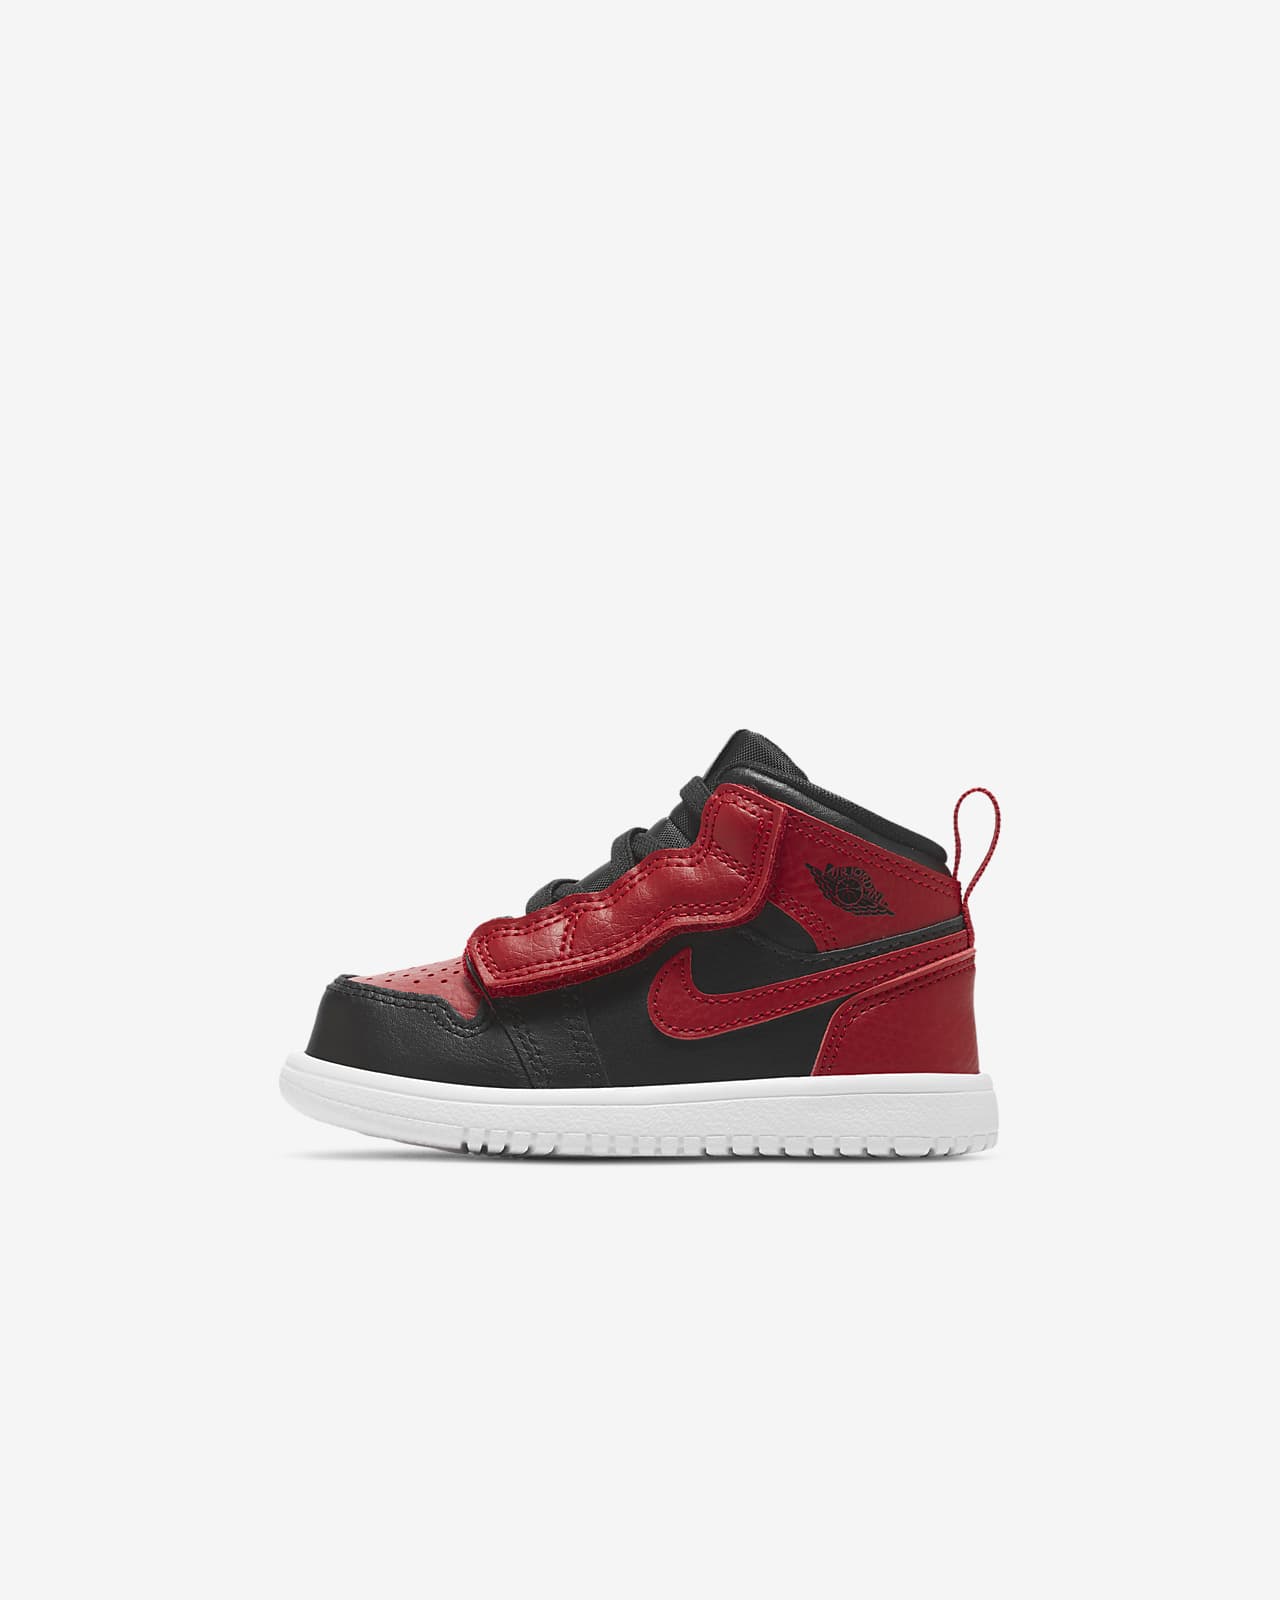 Jordan 1 Mid Baby and Toddler Shoe. Nike LU